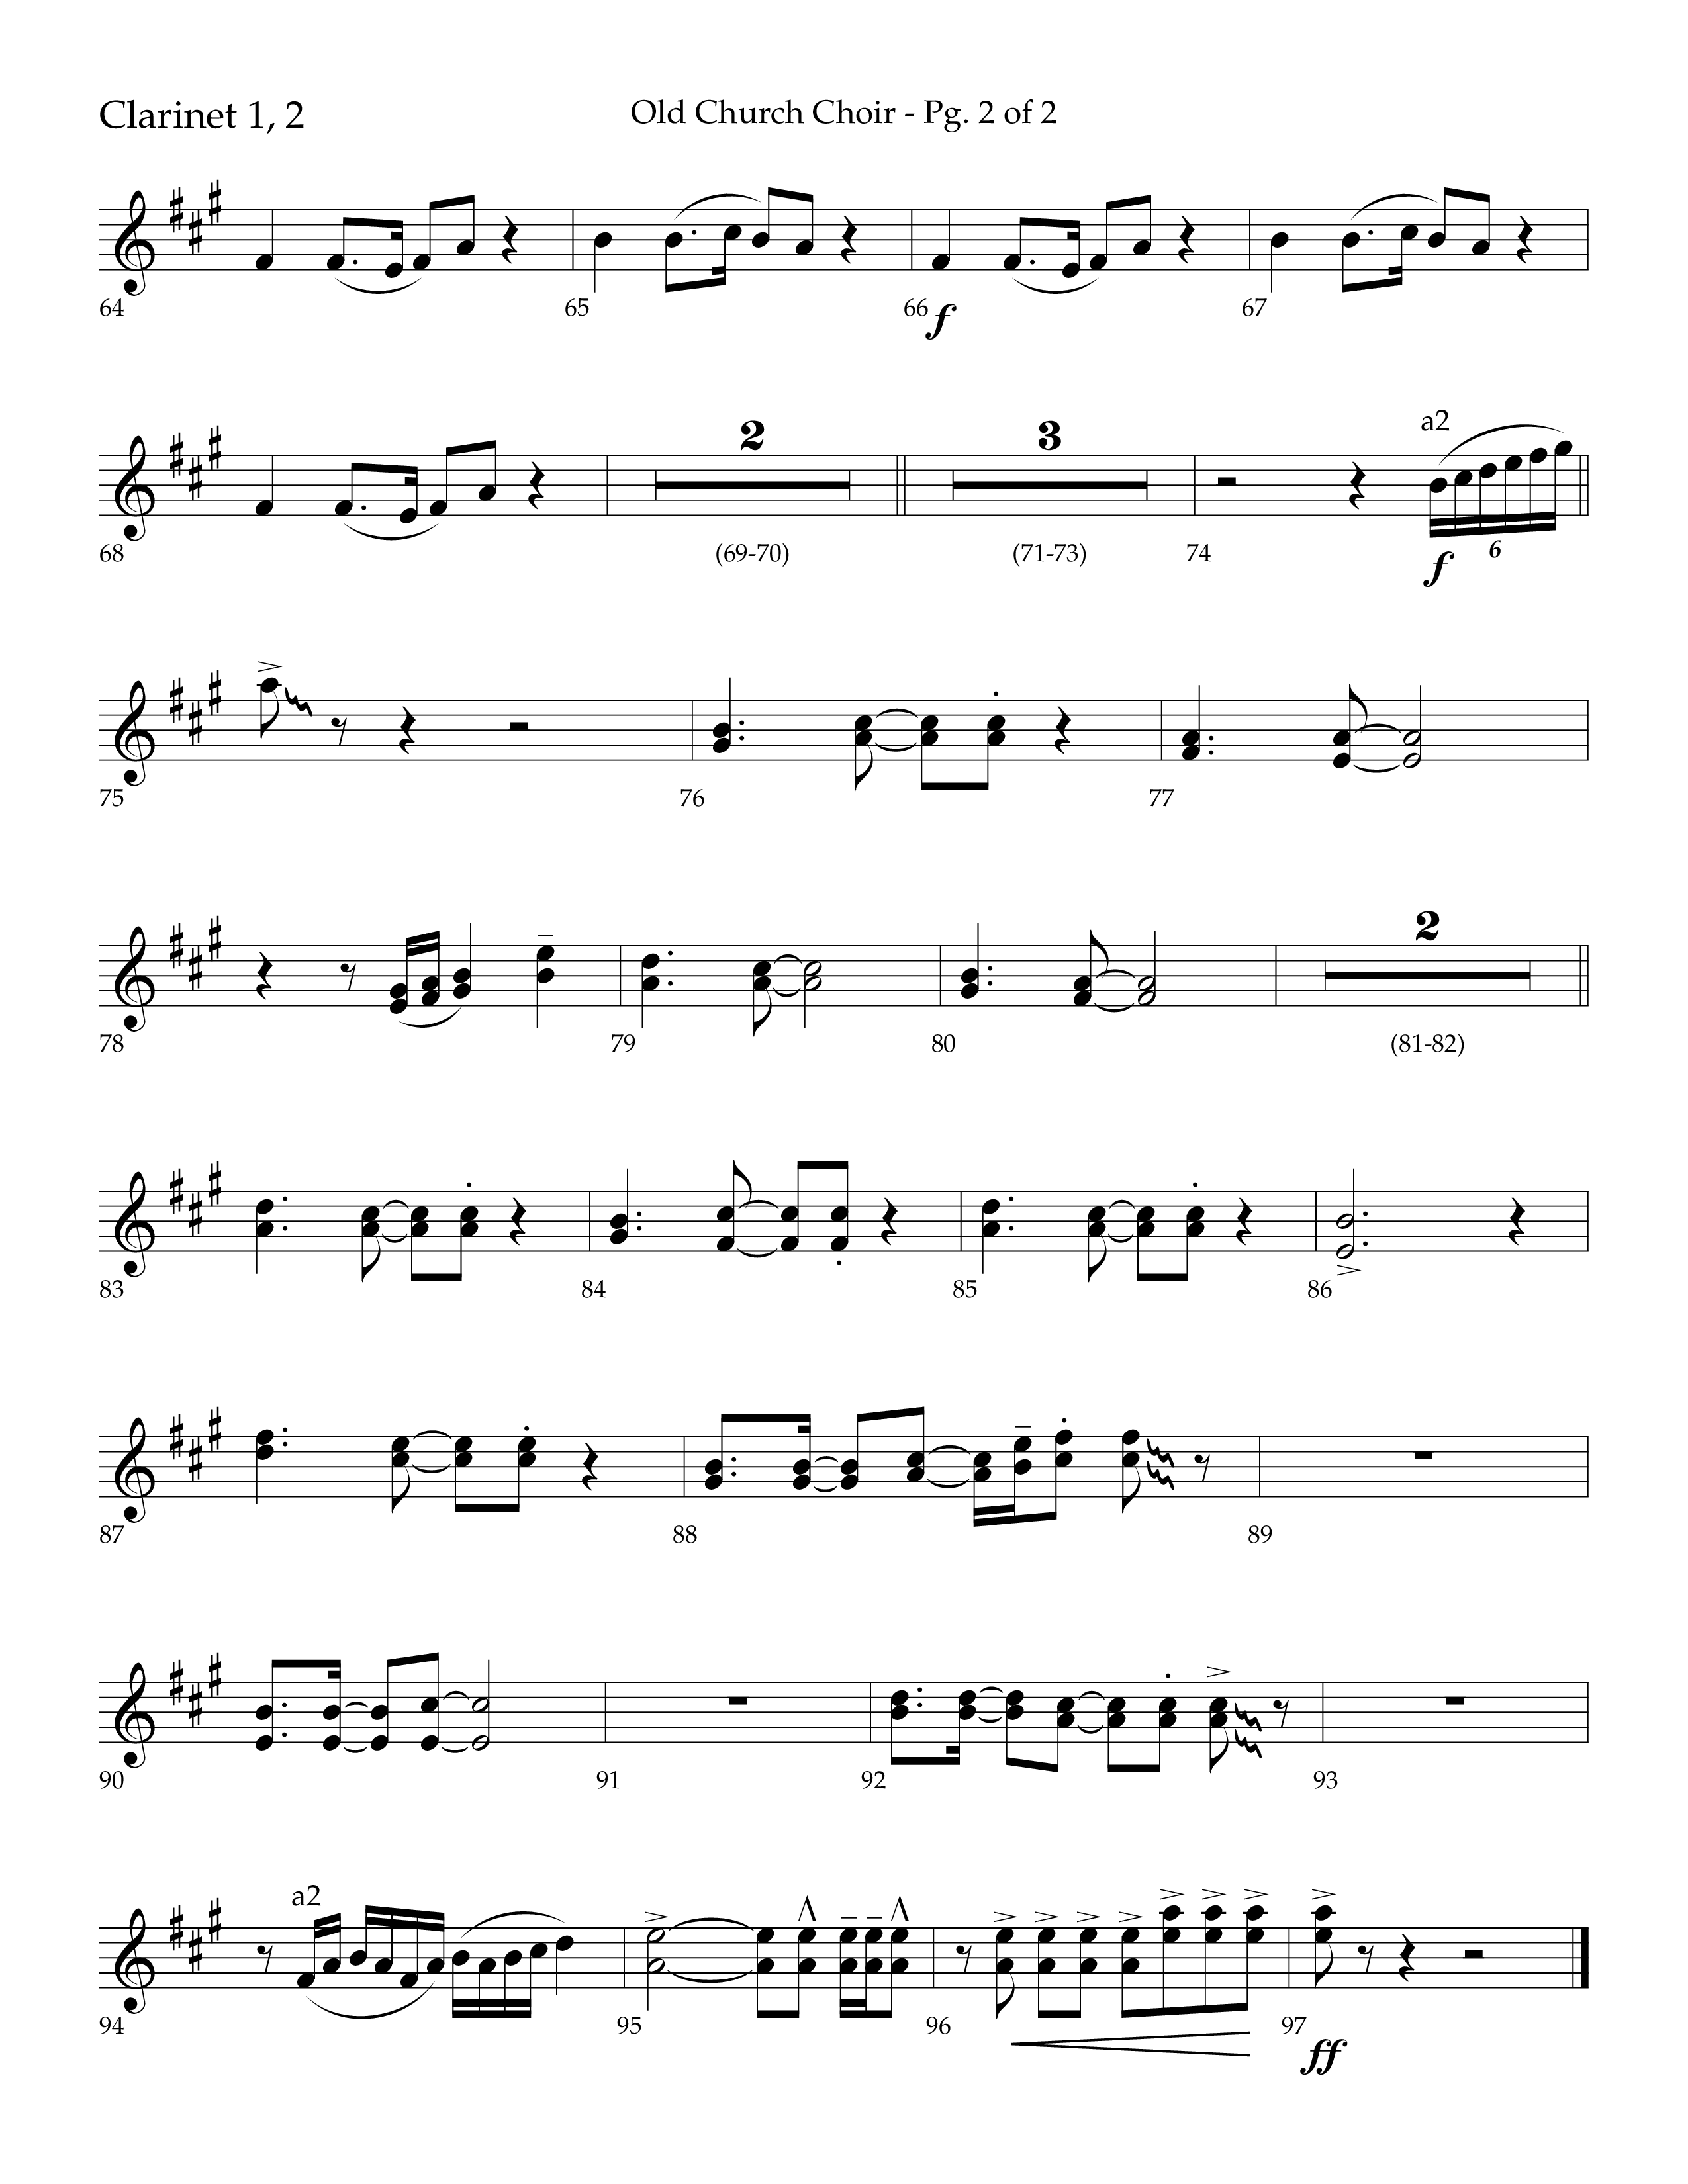 Old Church Choir (Choral Anthem SATB) Clarinet 1/2 (Lifeway Choral / Arr. Ken Barker / Arr. Craig Adams / Arr. Danny Zaloudik)